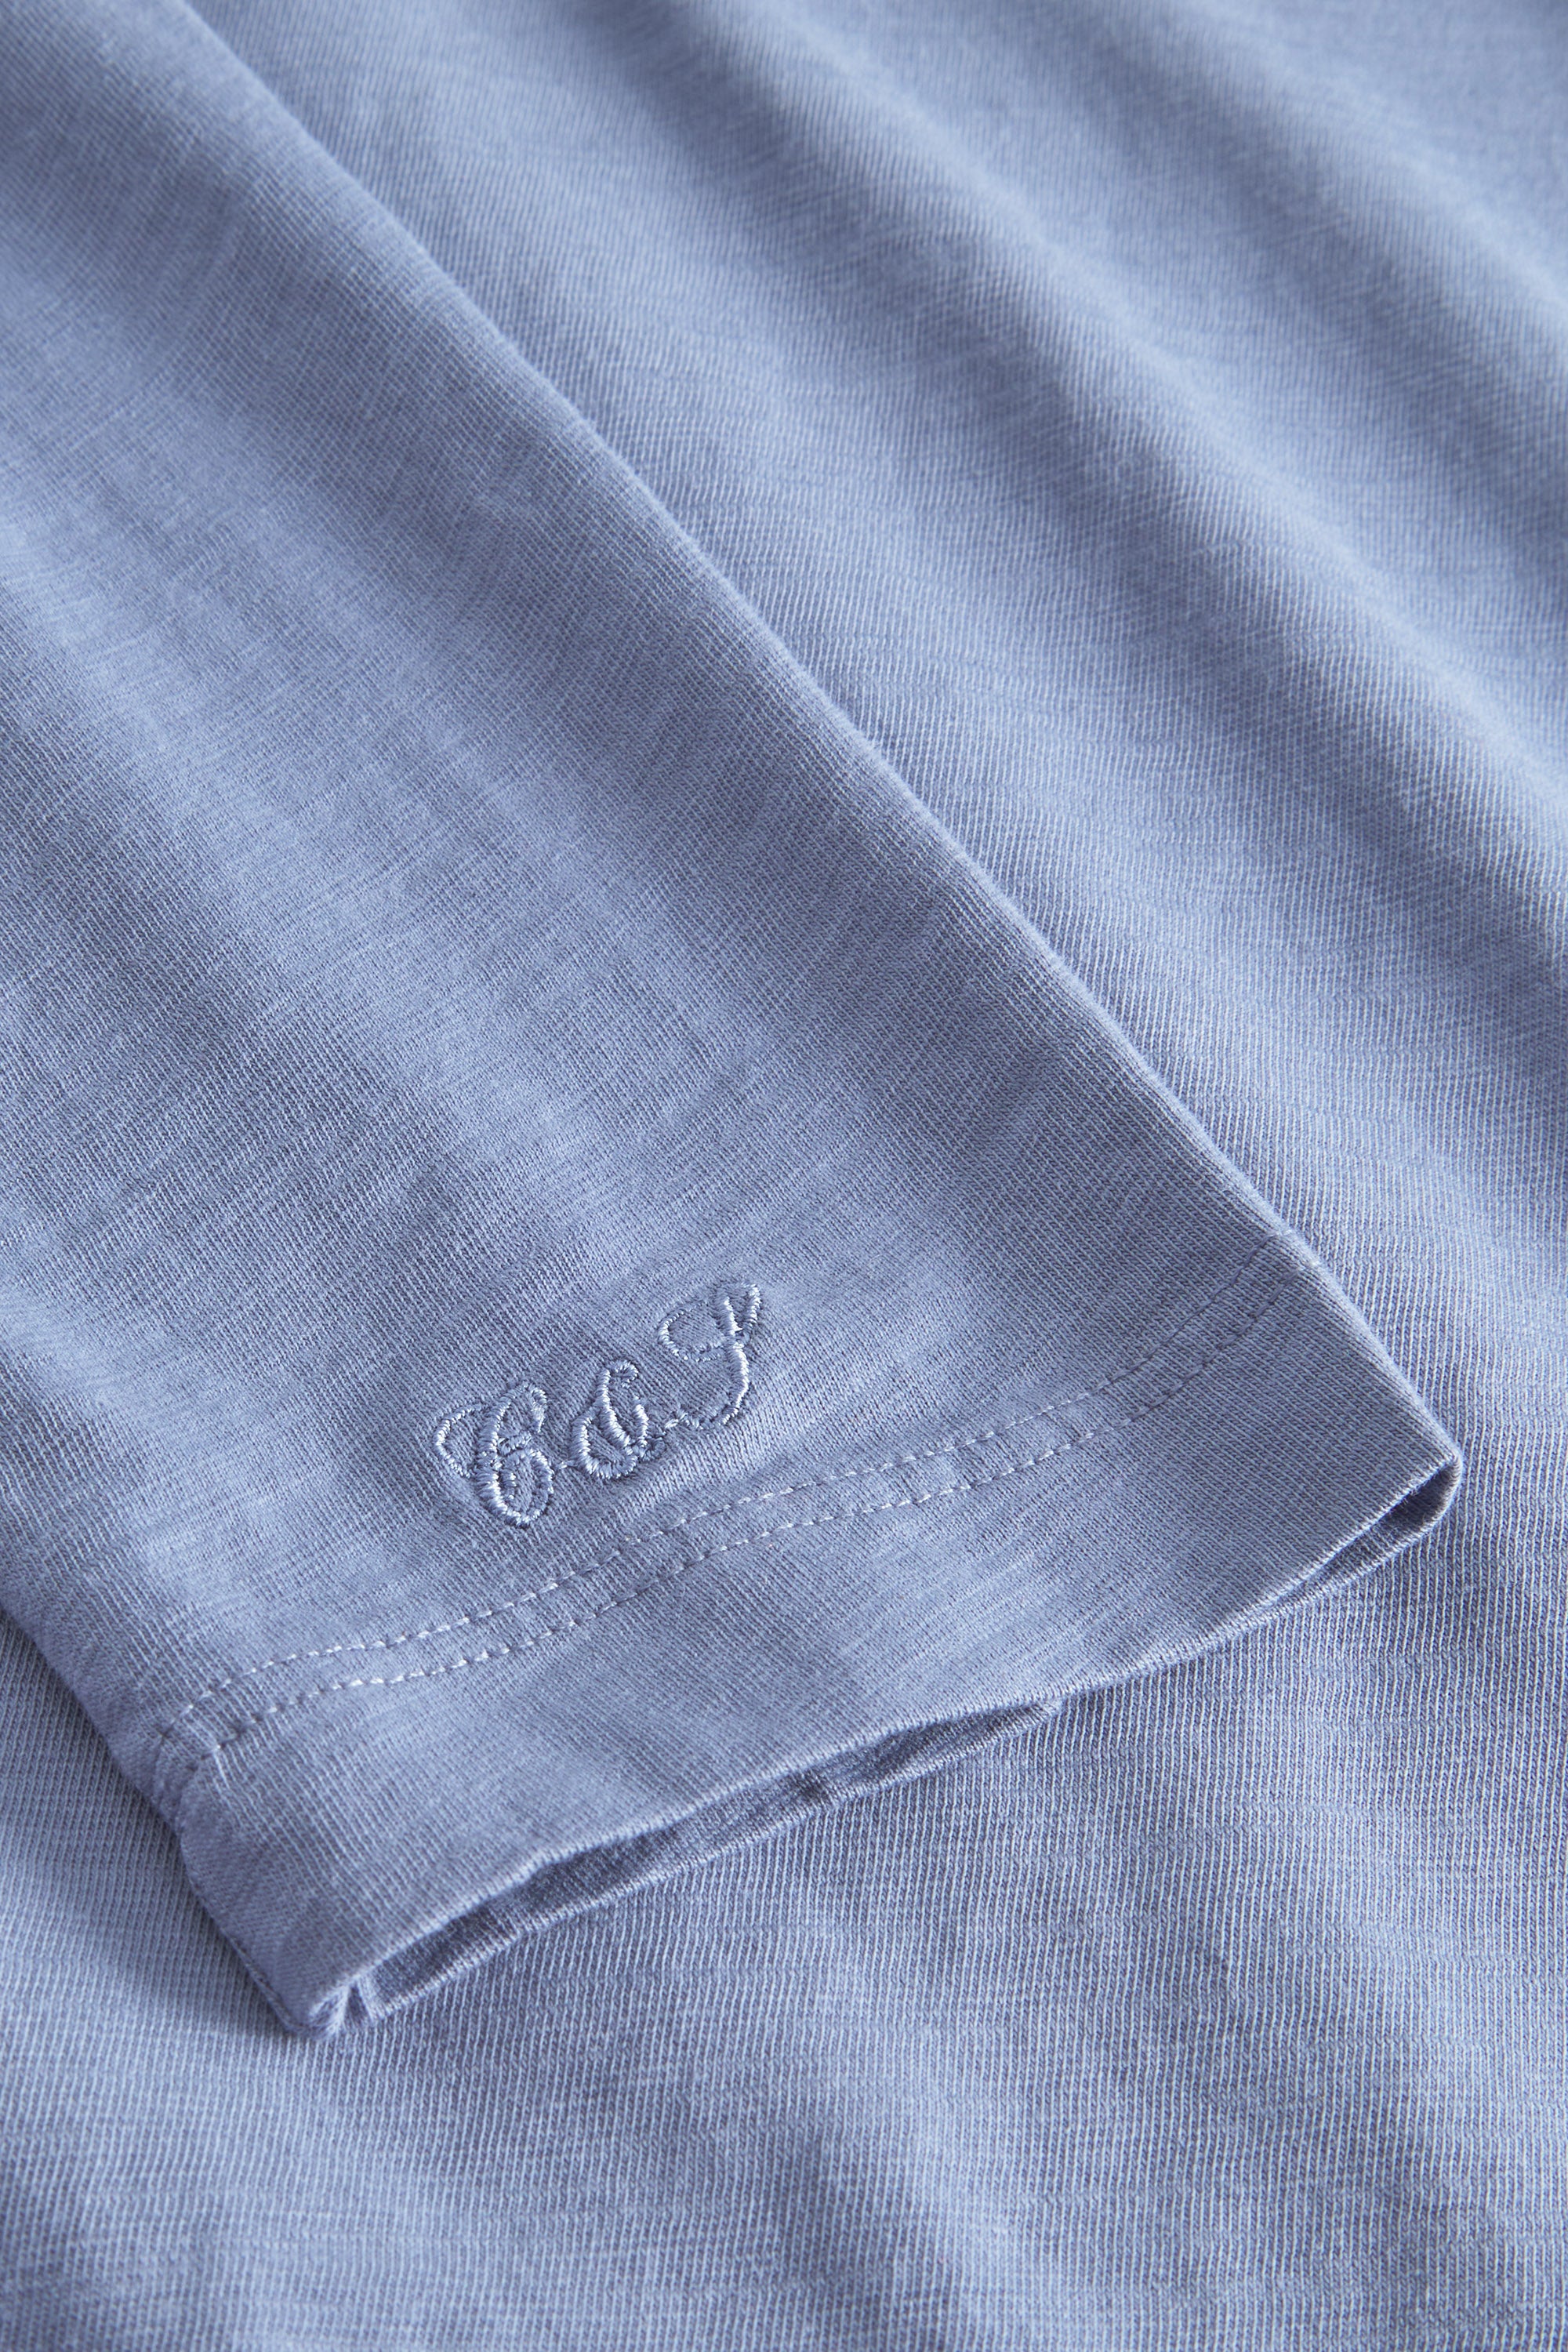 Herren T-Shirt, hellblau, 100% Baumwolle von Colours & Sons